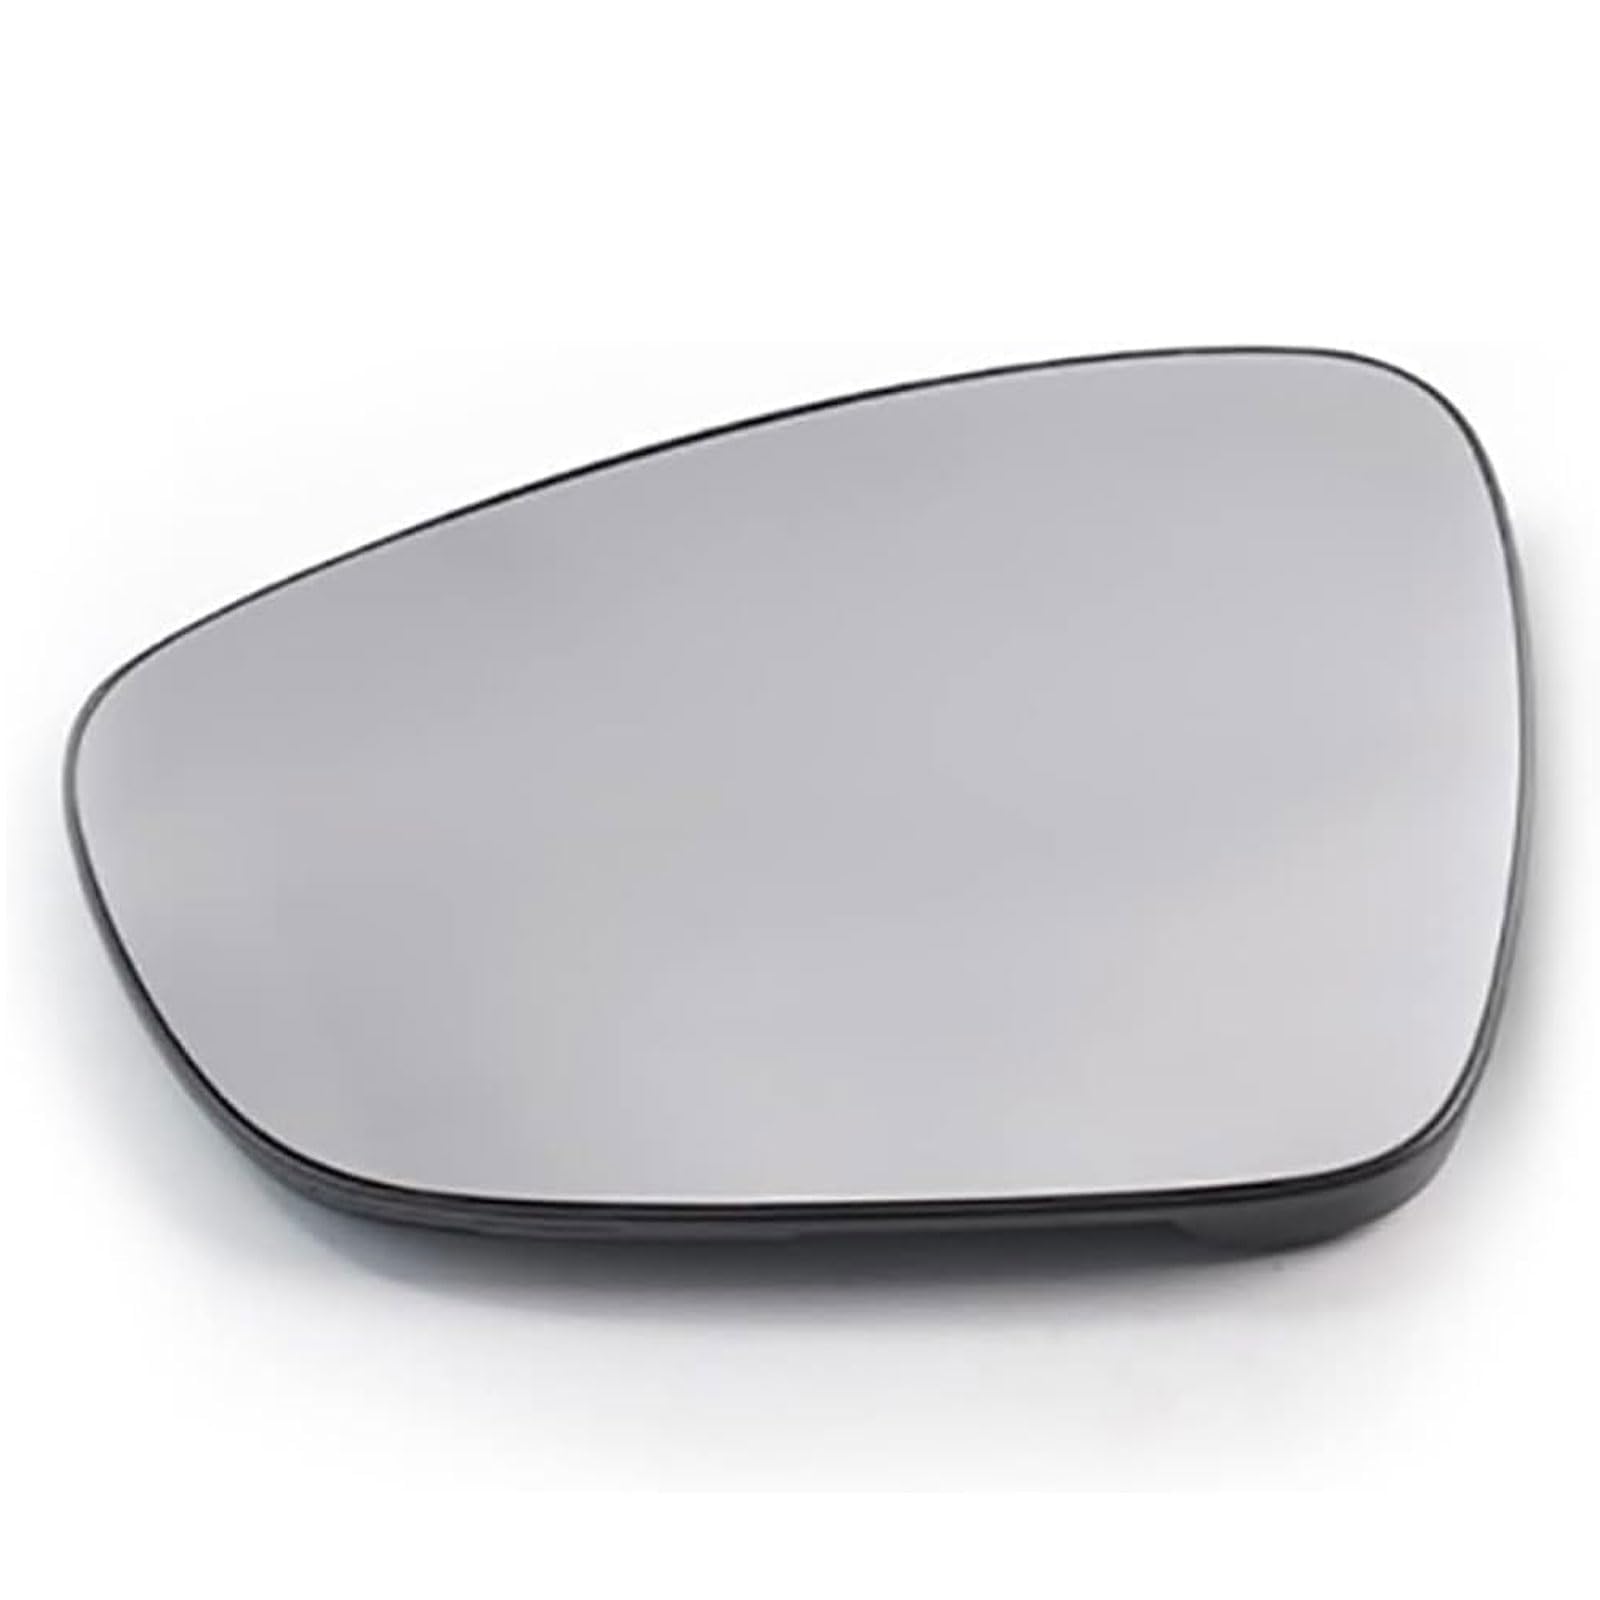 Für 2014 2015 2016 2017 Citroen C4 Picasso Auto Außenspiegelglas Ersatz Rückspiegel Außenspiegel Beheizt Glas Für Außenpiegel Ersatz,A/Left von RIDELF